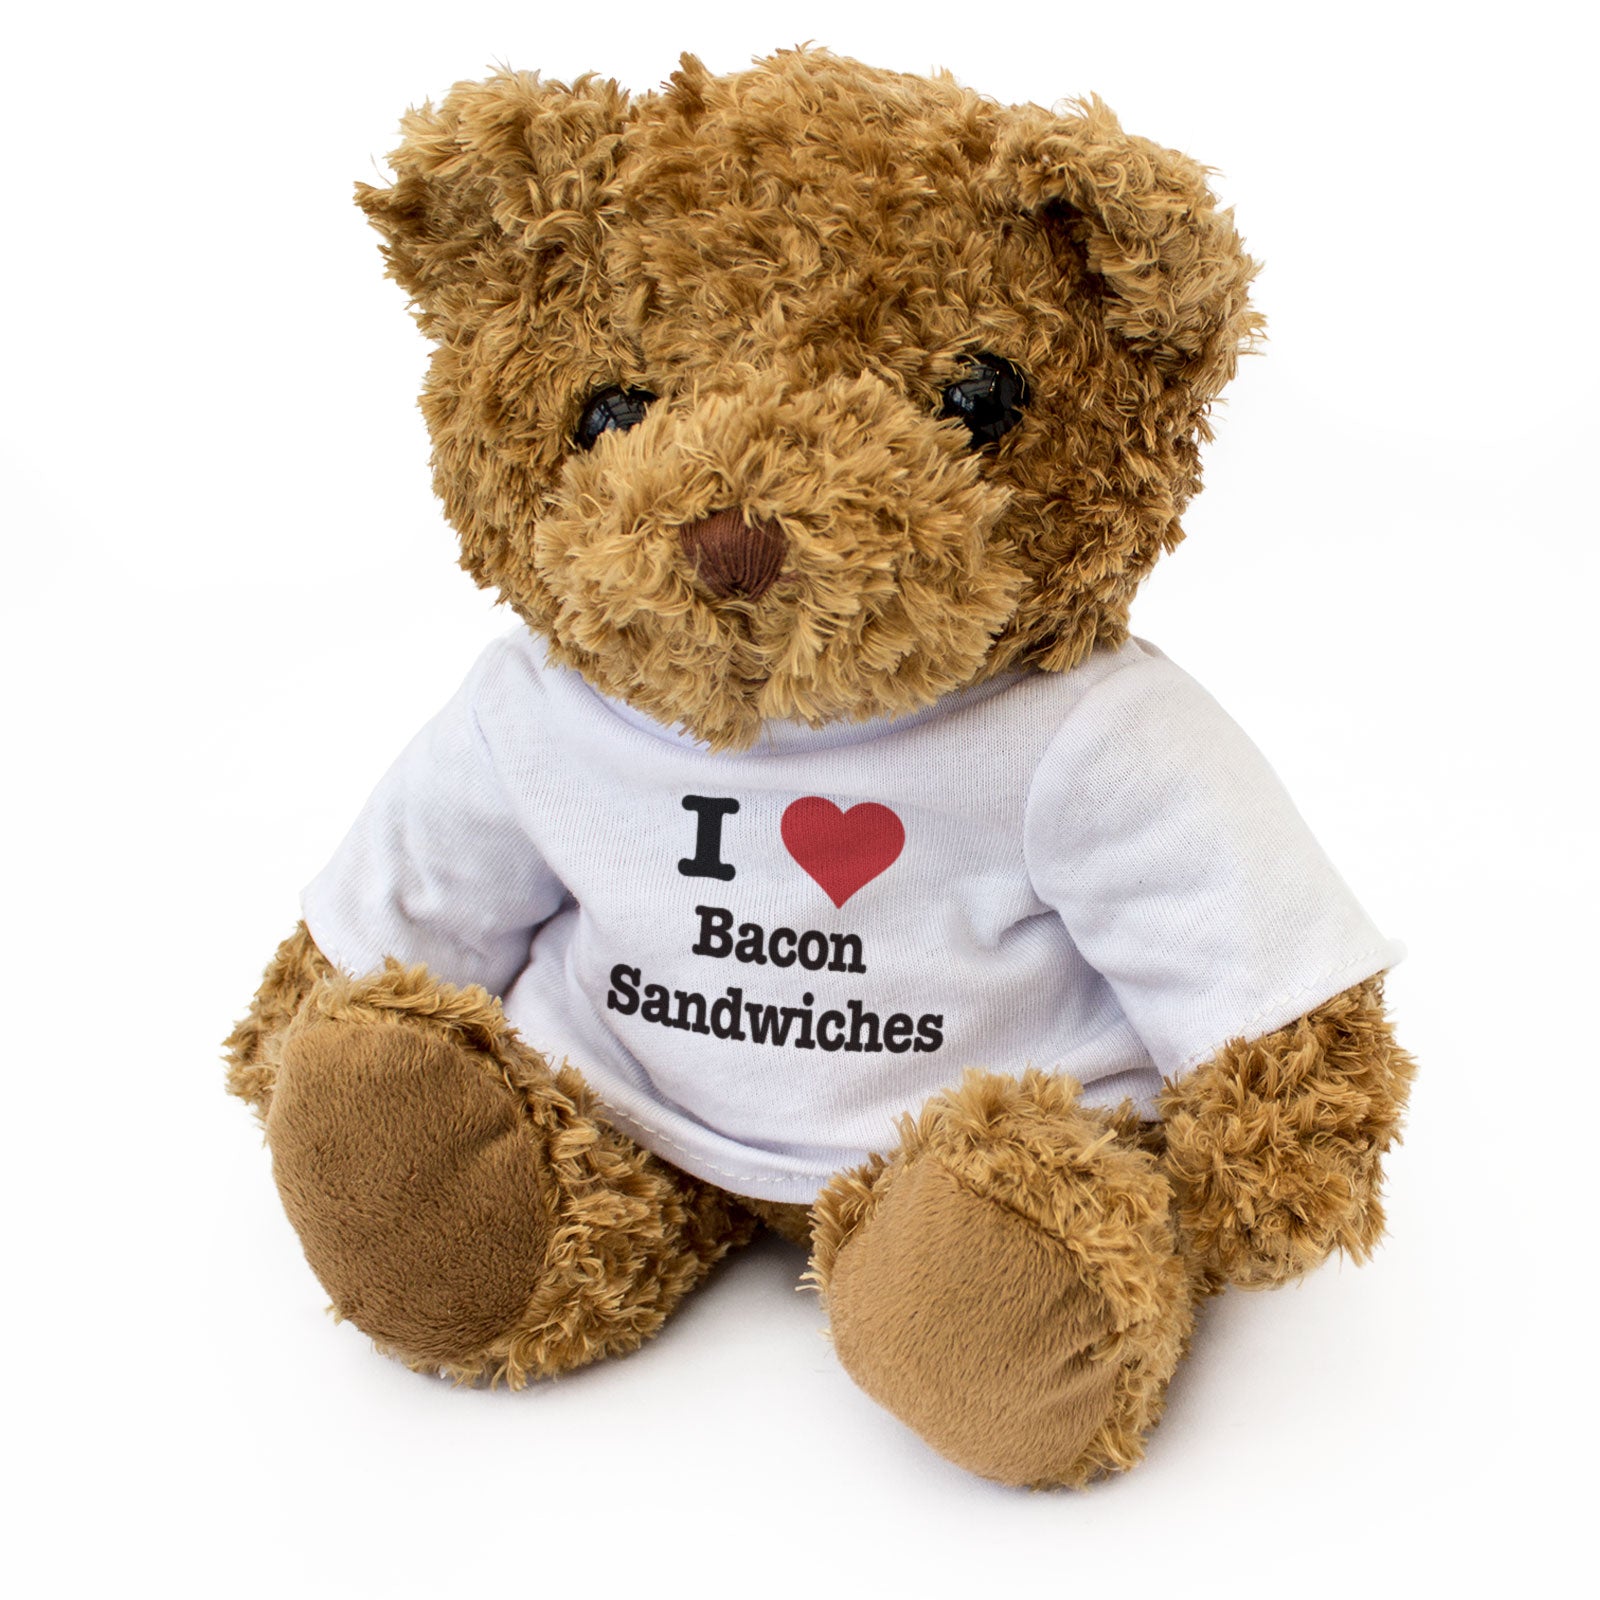 I Love Bacon Sandwiches - Teddy Bear